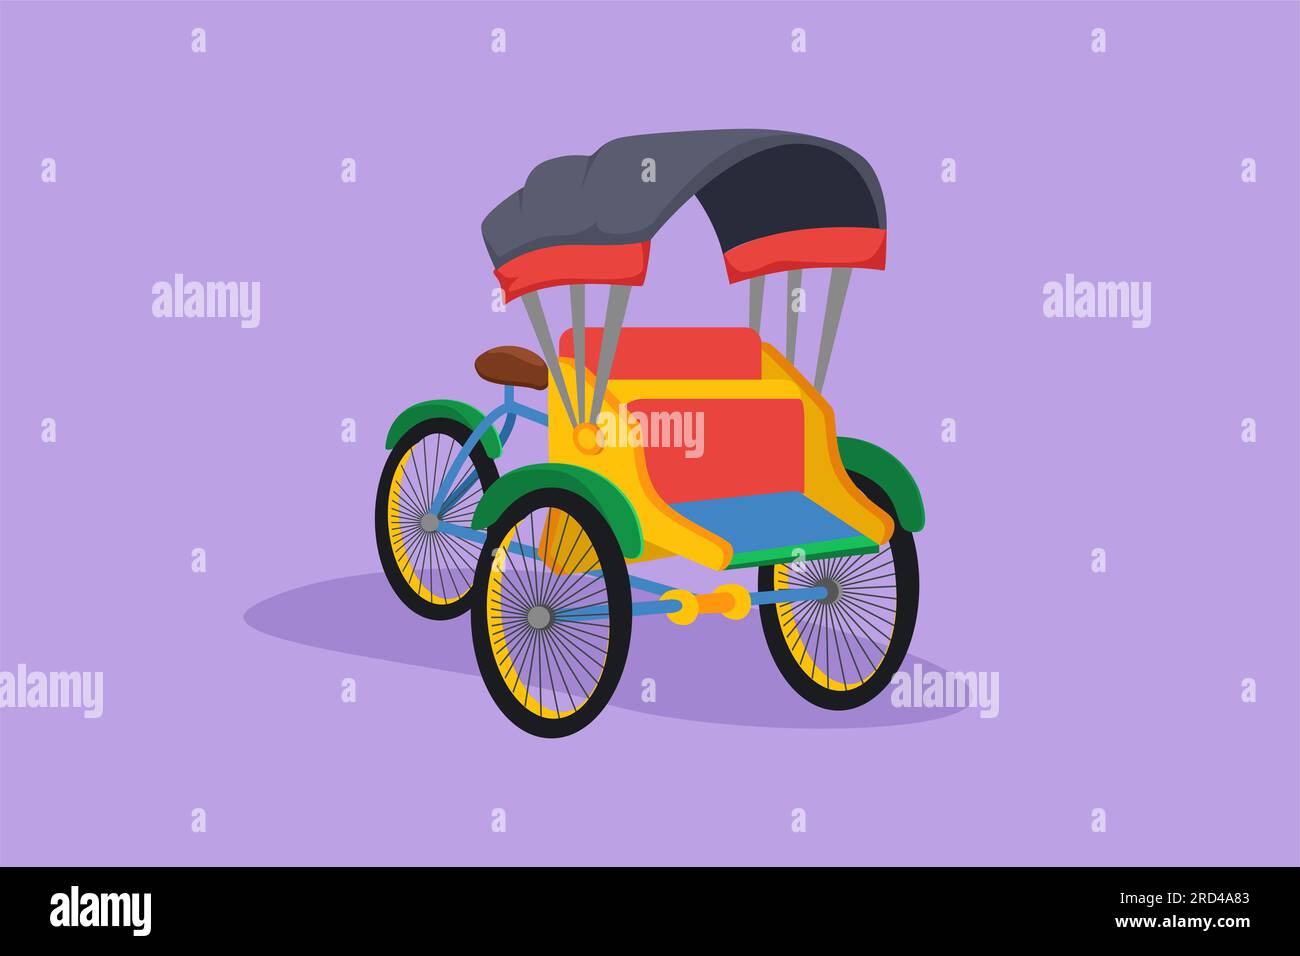 Pedicab De Dibujo De Estilo Plano De Dibujos Animados Con Tres Ruedas Y Asiento Del Pasajero En